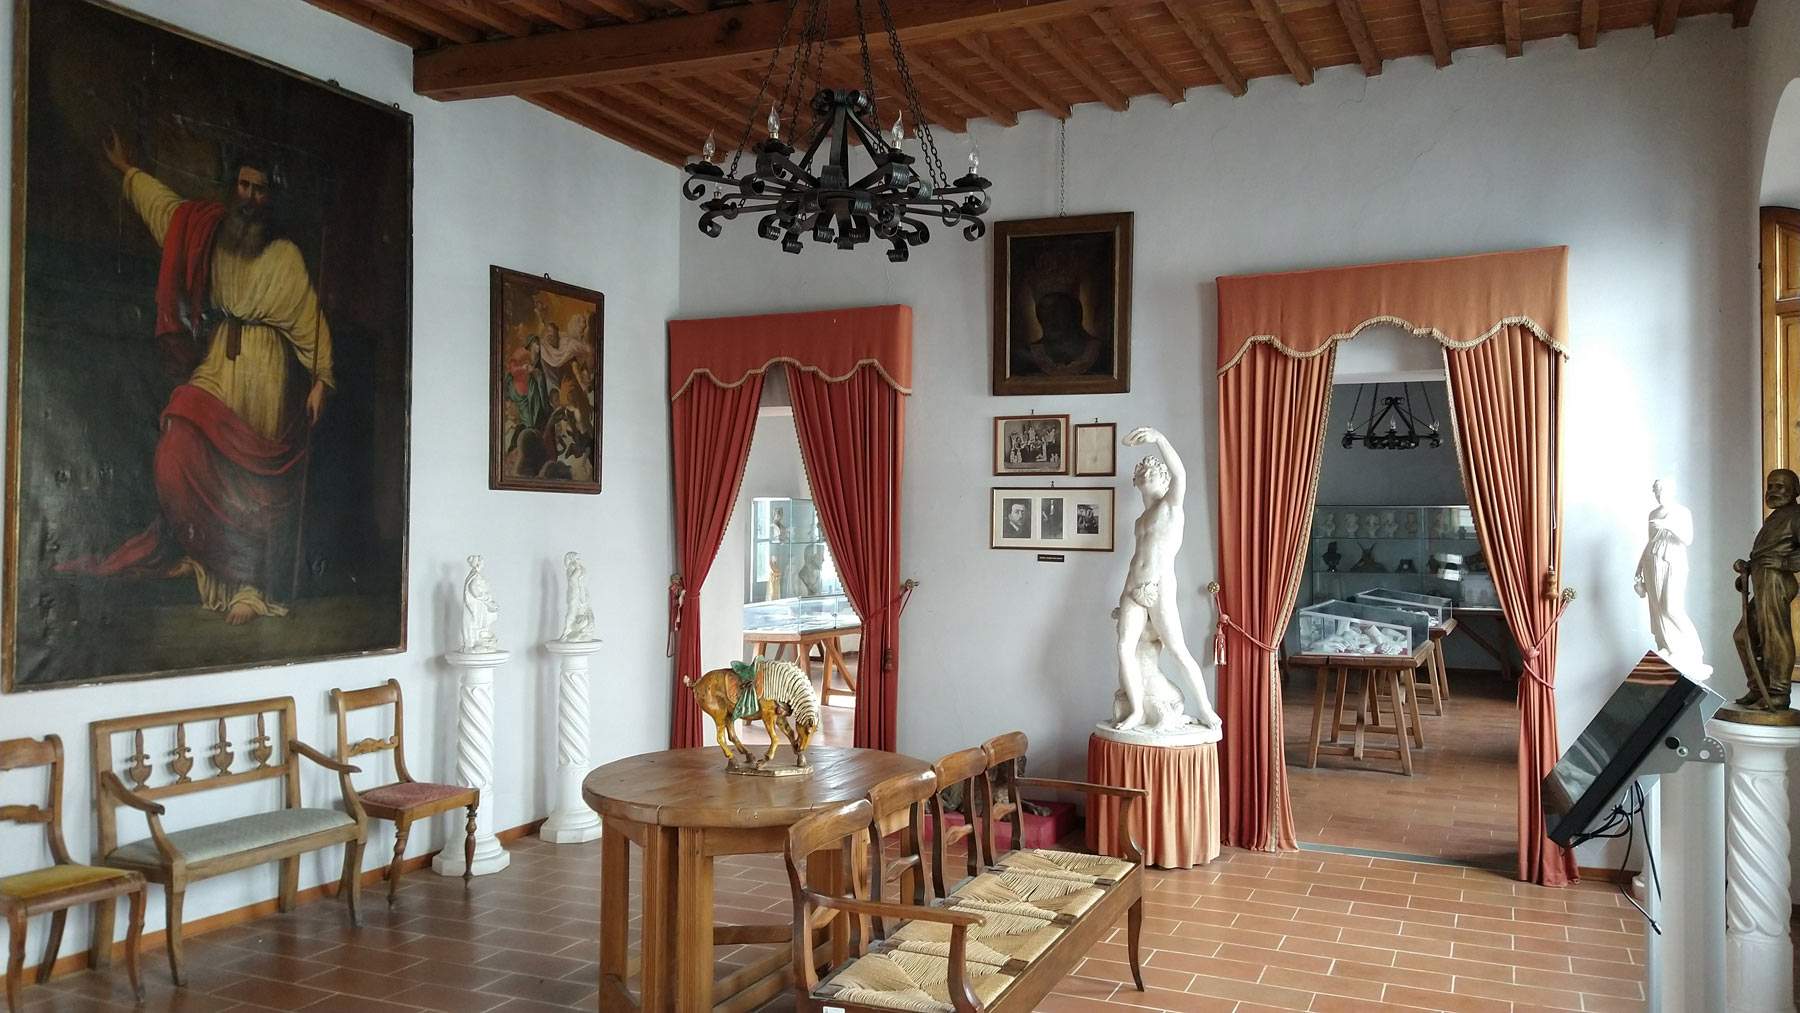 Coreglia, das antike Dorf der Auswanderer, die Gipsstatuetten in die Welt brachten